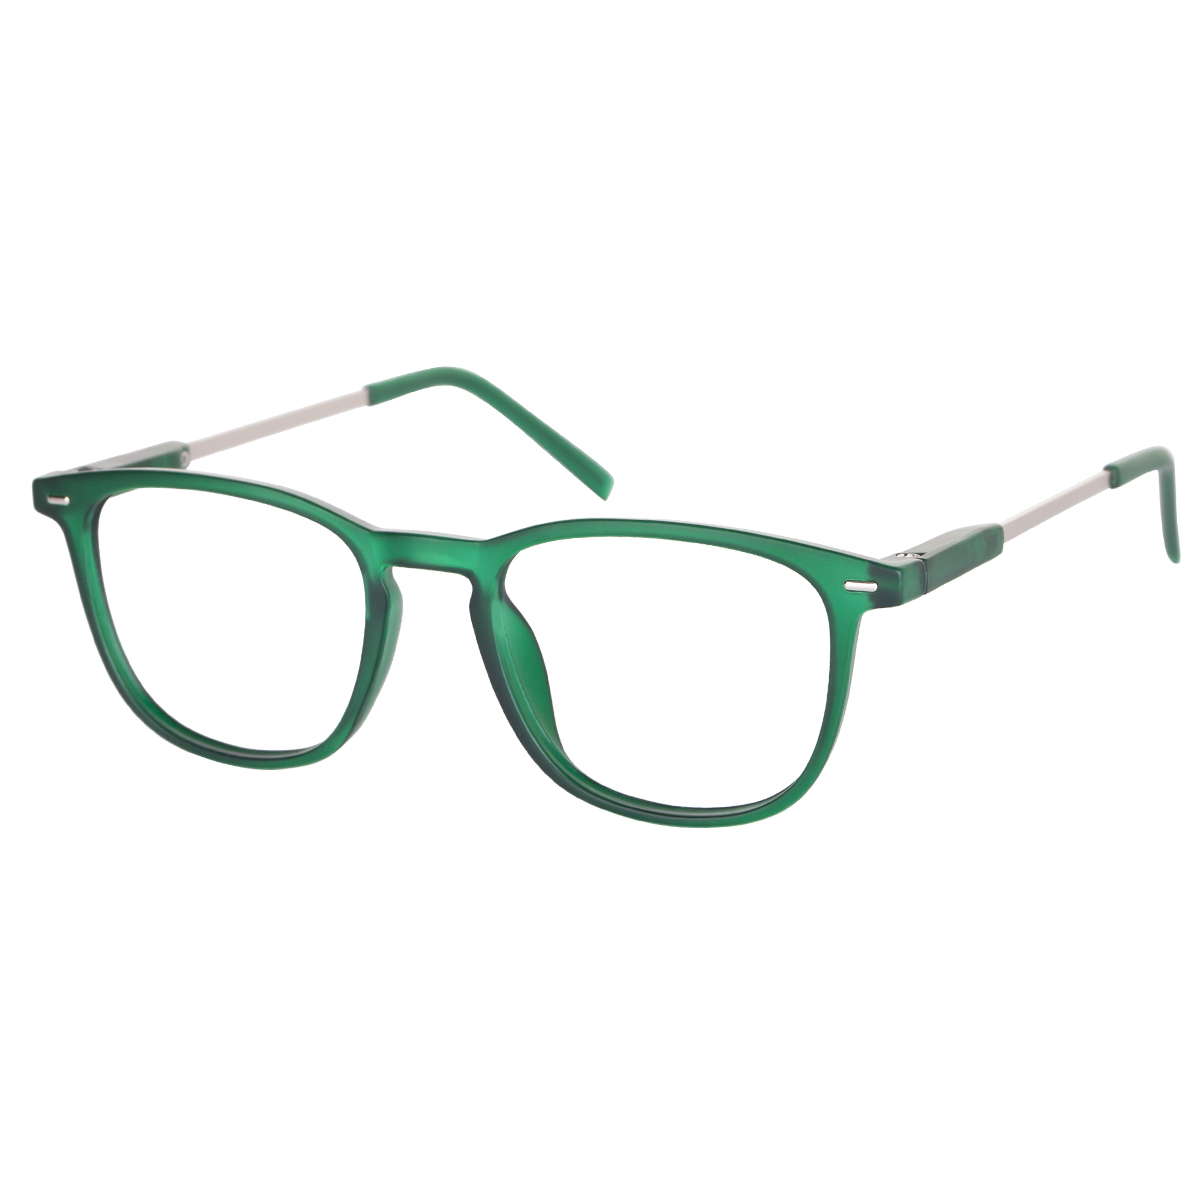 Rowan - Square Green Reading Glasses for Men & Women